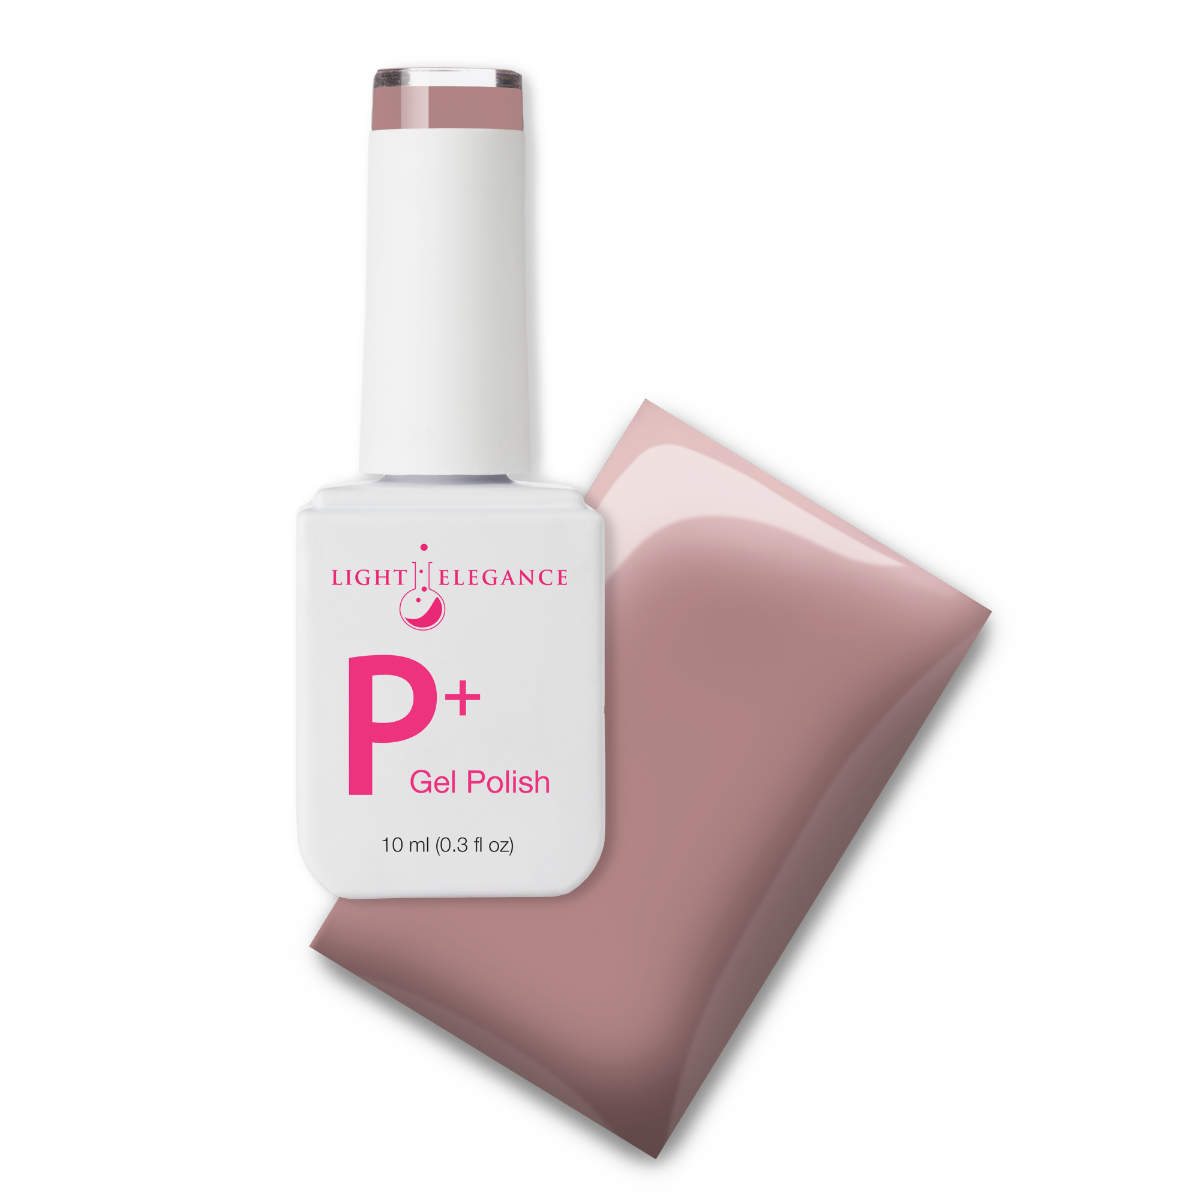 Light Elegance P+ Soak Off Color Gel - Your Churn :: New Packaging